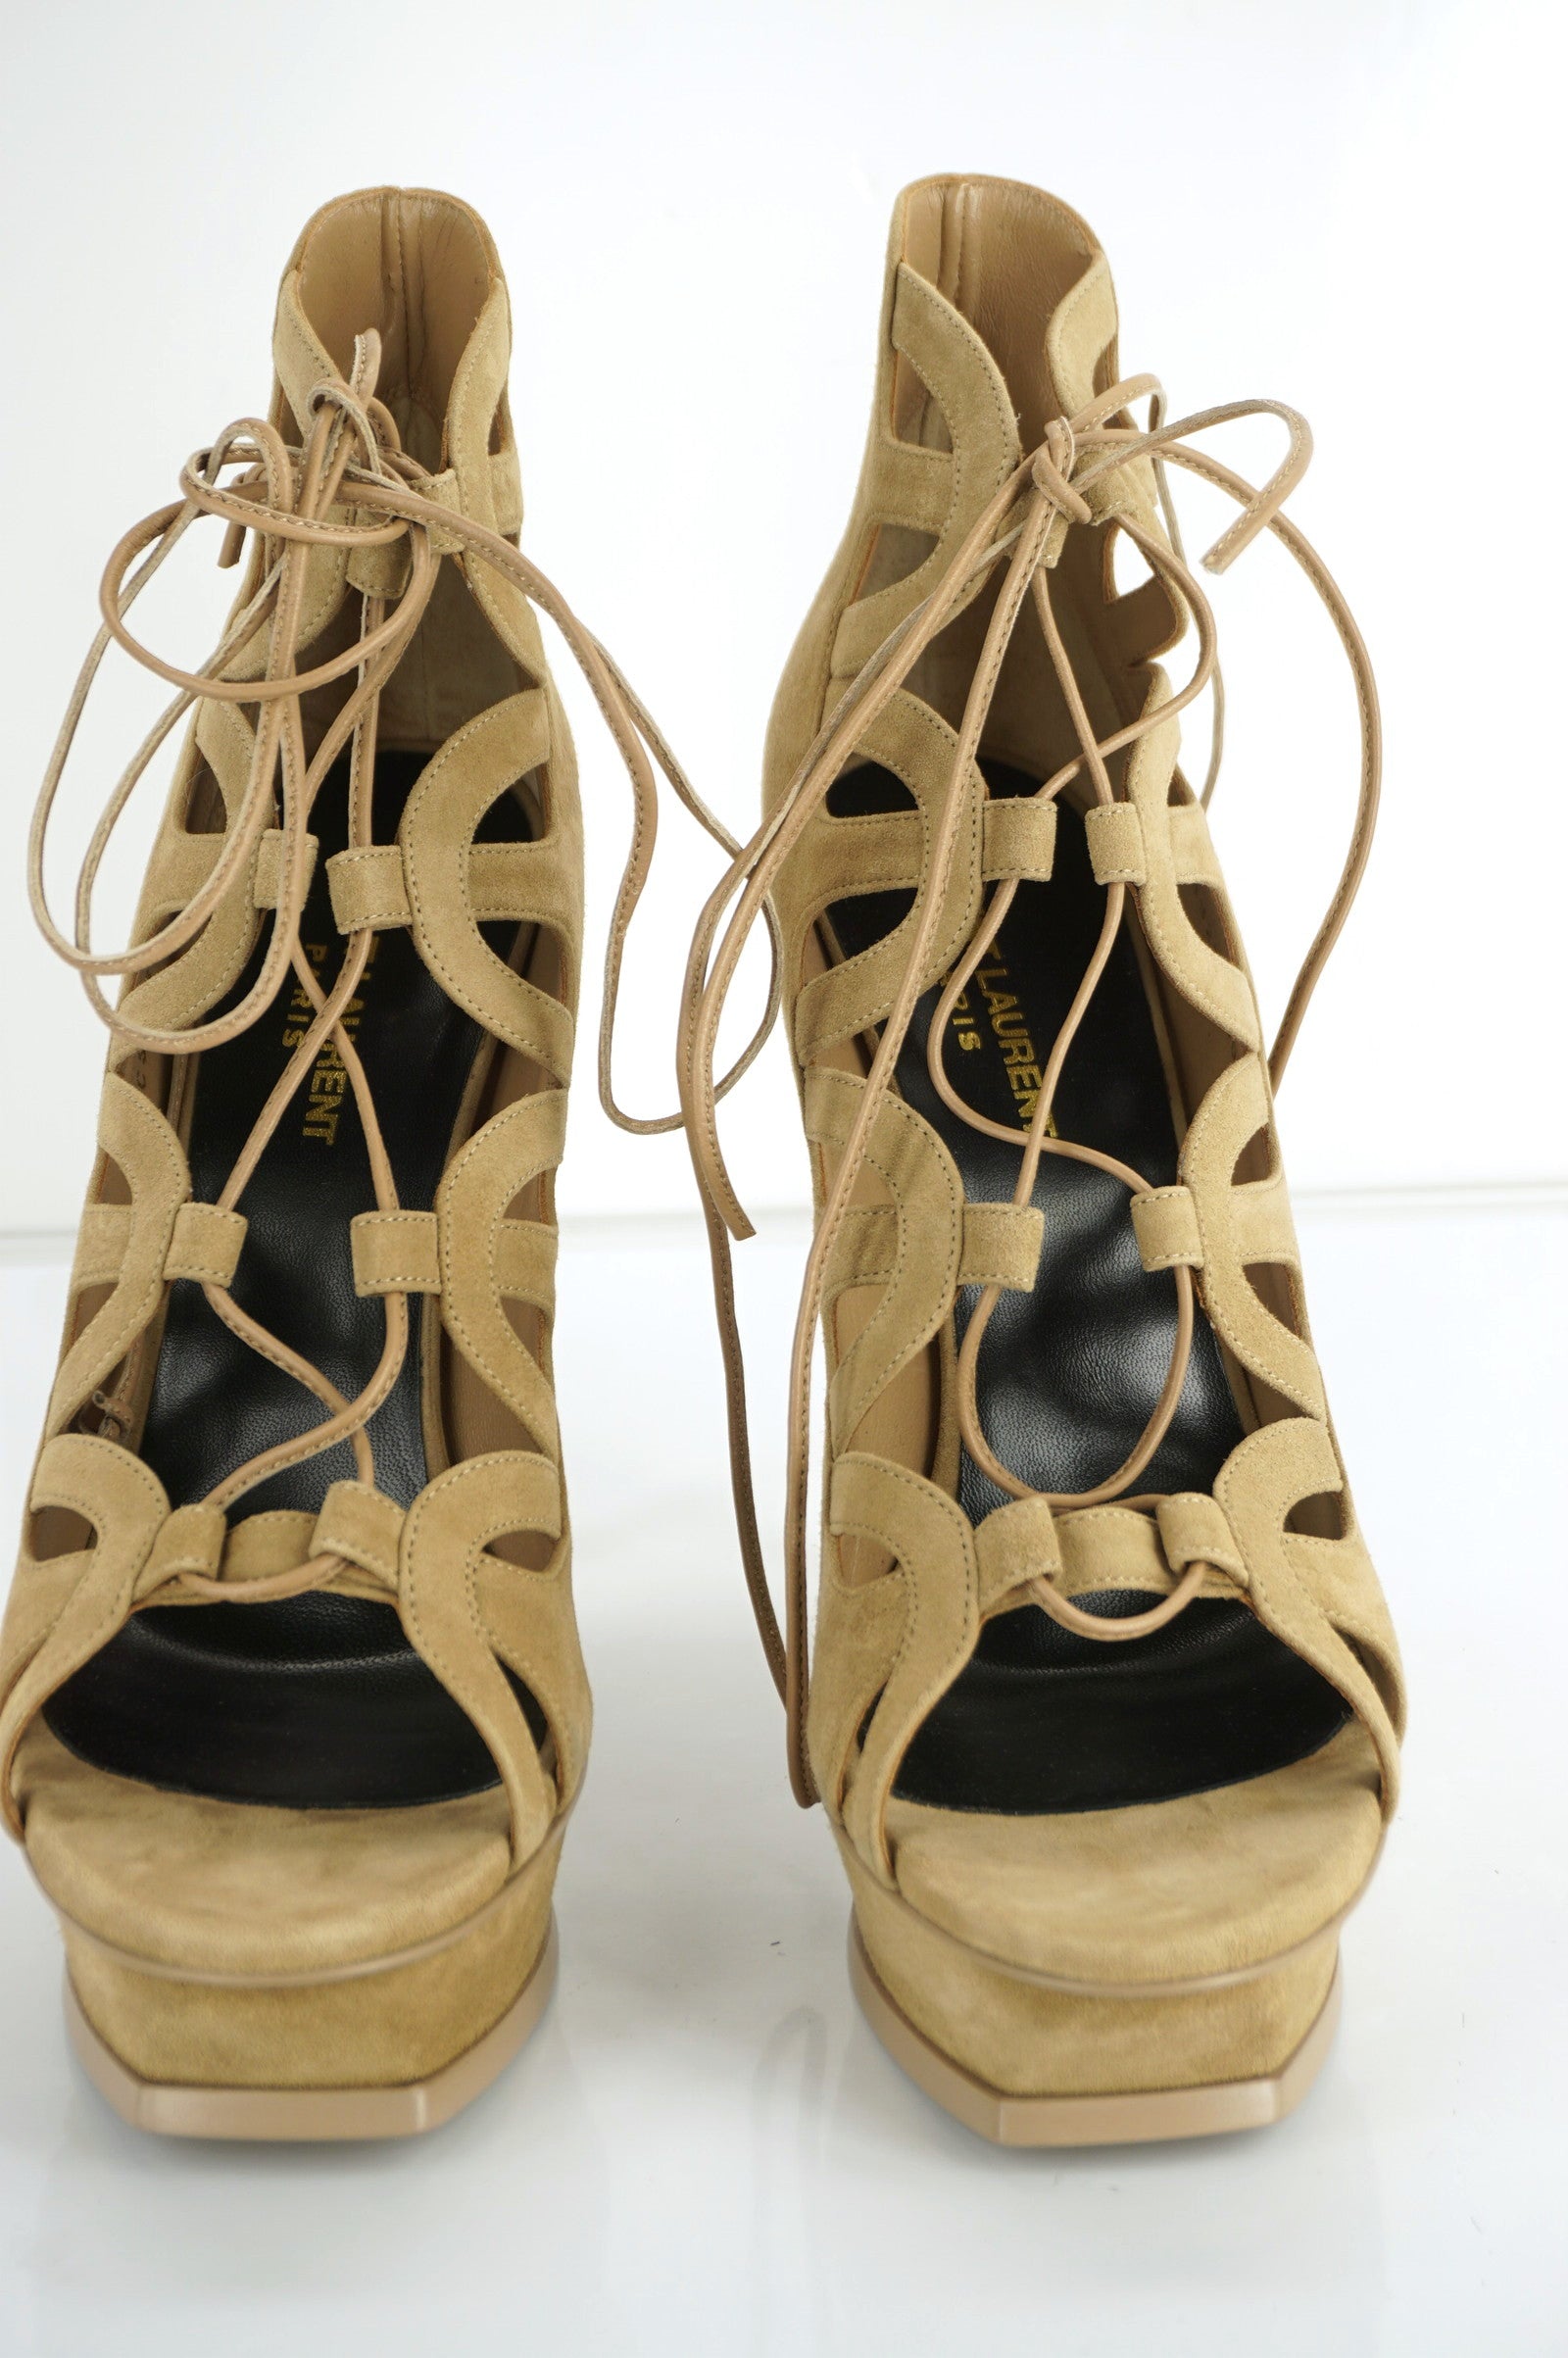 SAINT LAURENT Tribute Lace-Up Platform Sandals SZ 40 10 Taupe Suede YSL $995 NIB